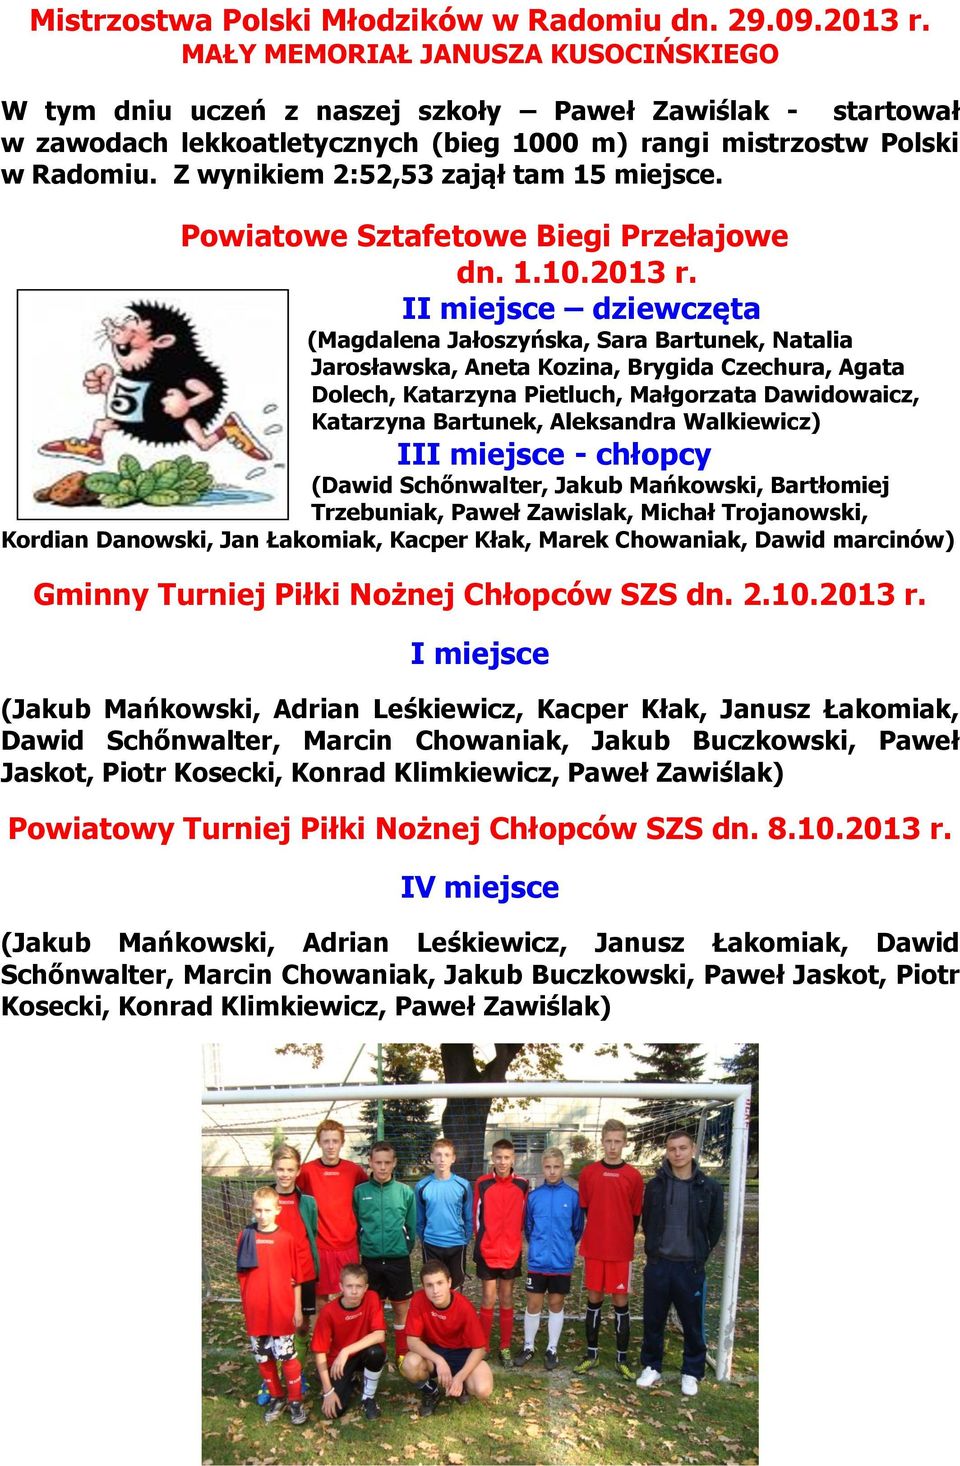 Z wynikiem 2:52,53 zajął tam 15 miejsce. Powiatowe Sztafetowe Biegi Przełajowe dn. 1.10.2013 r.